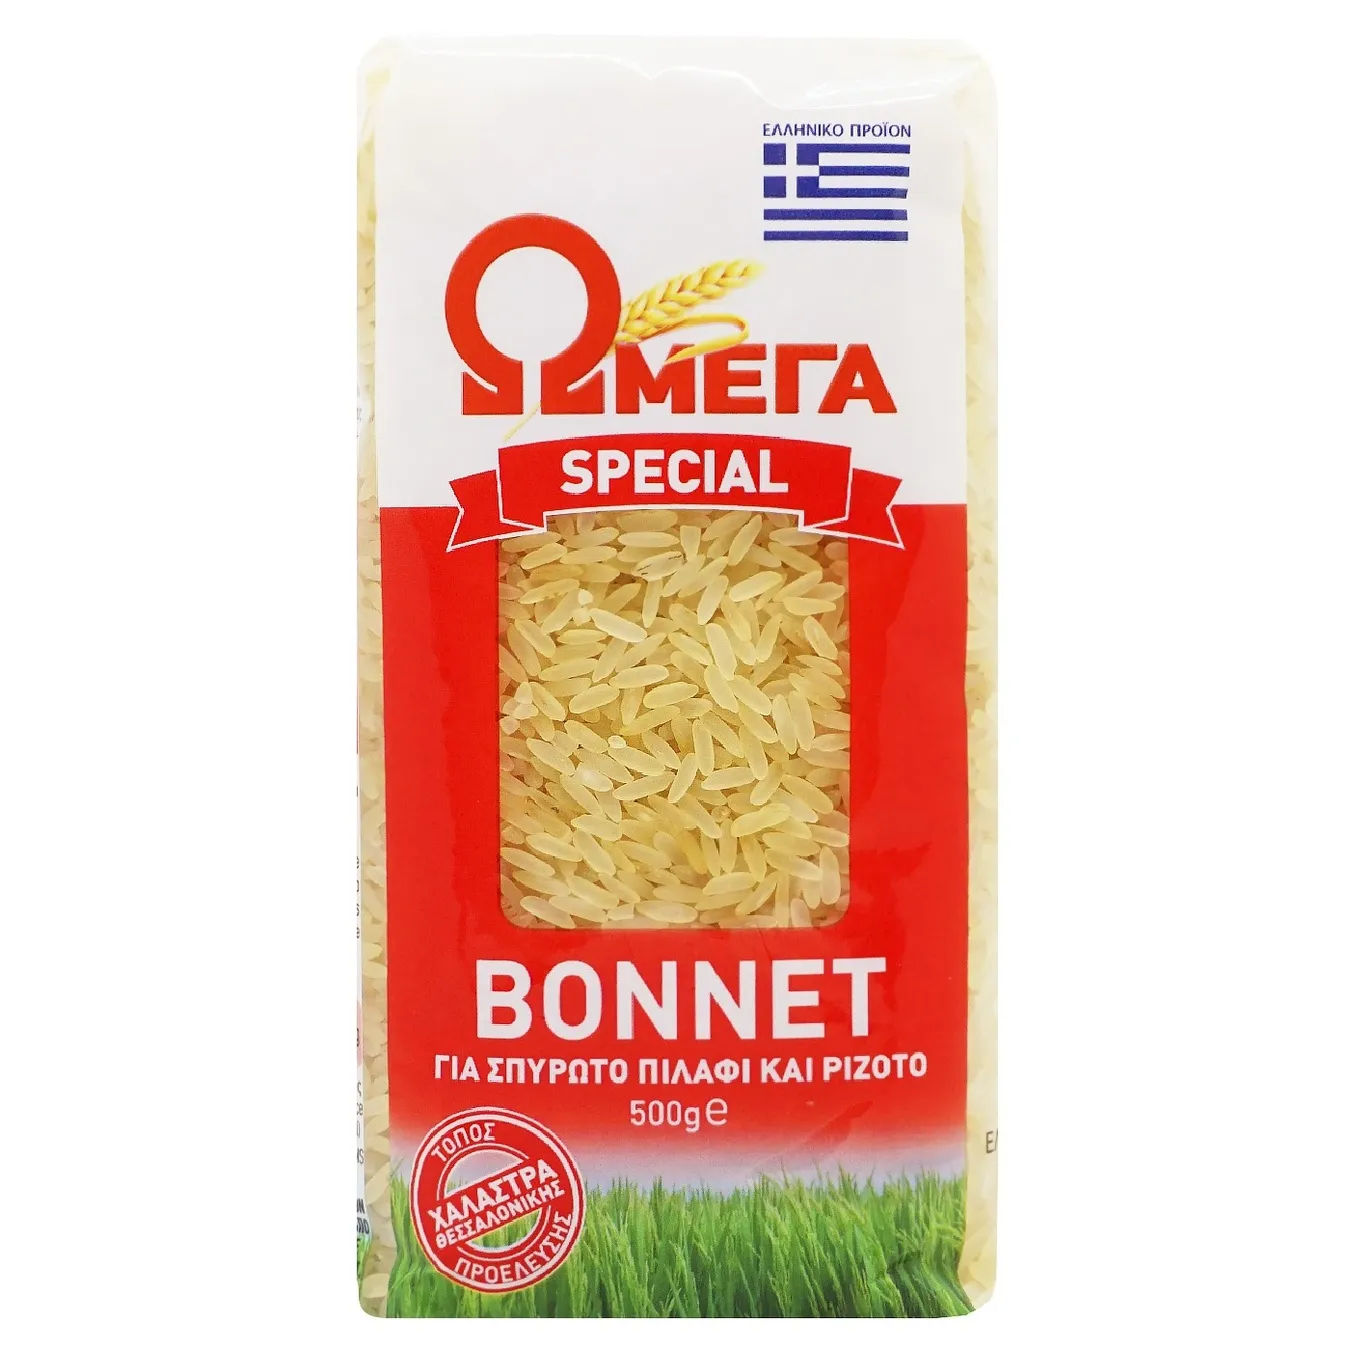 Omega long steamed rice 500g